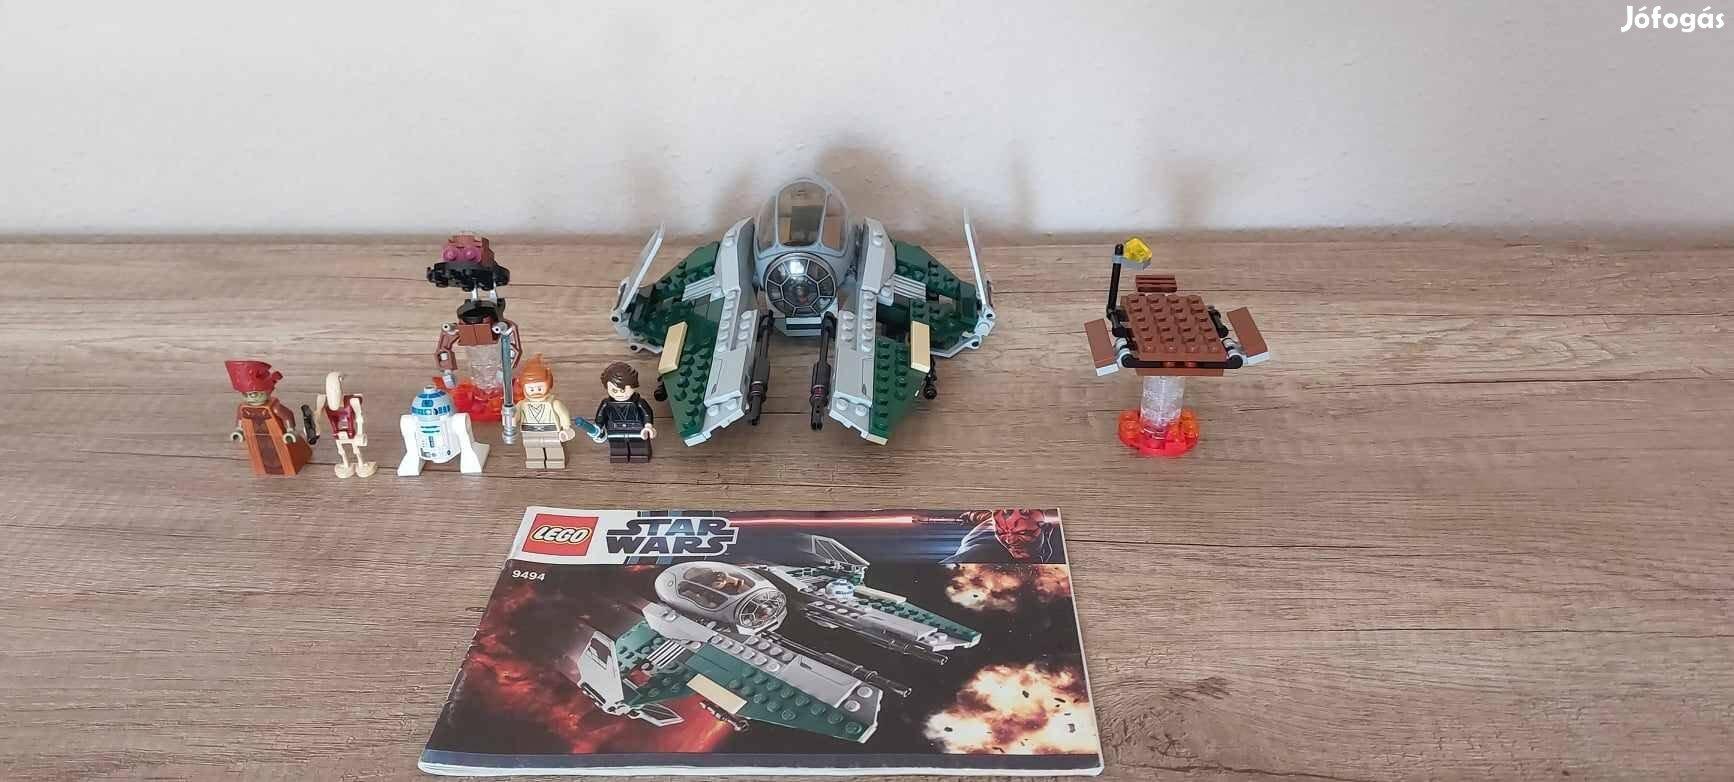 Eladó 9494 Anakin's Jedi Interceptor, LEGO Star Wars